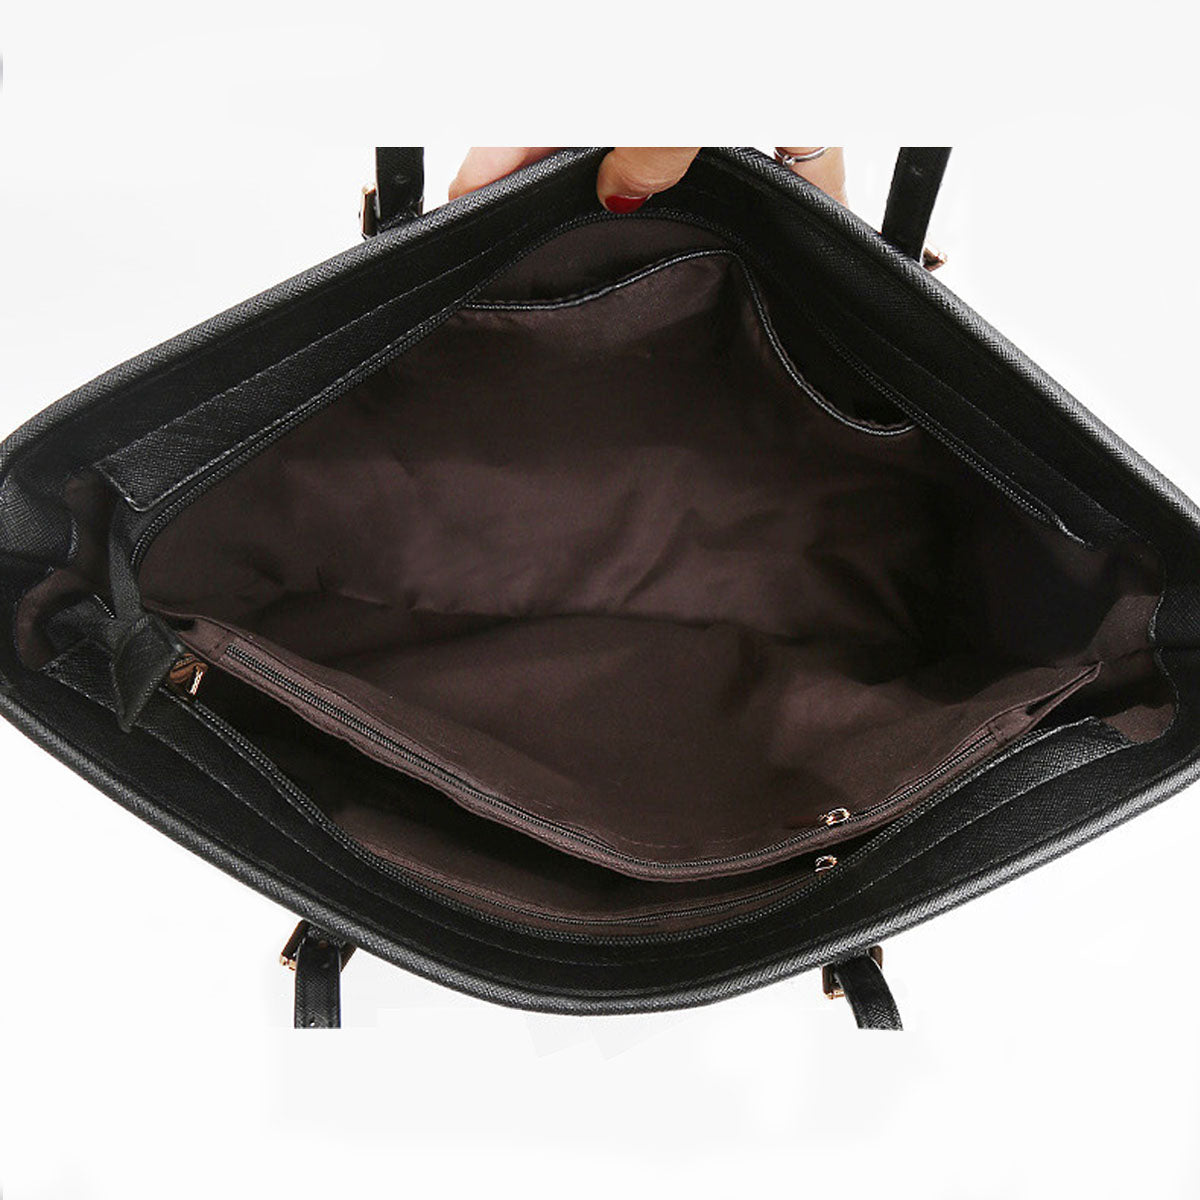 Samoyed Tote Bag V1